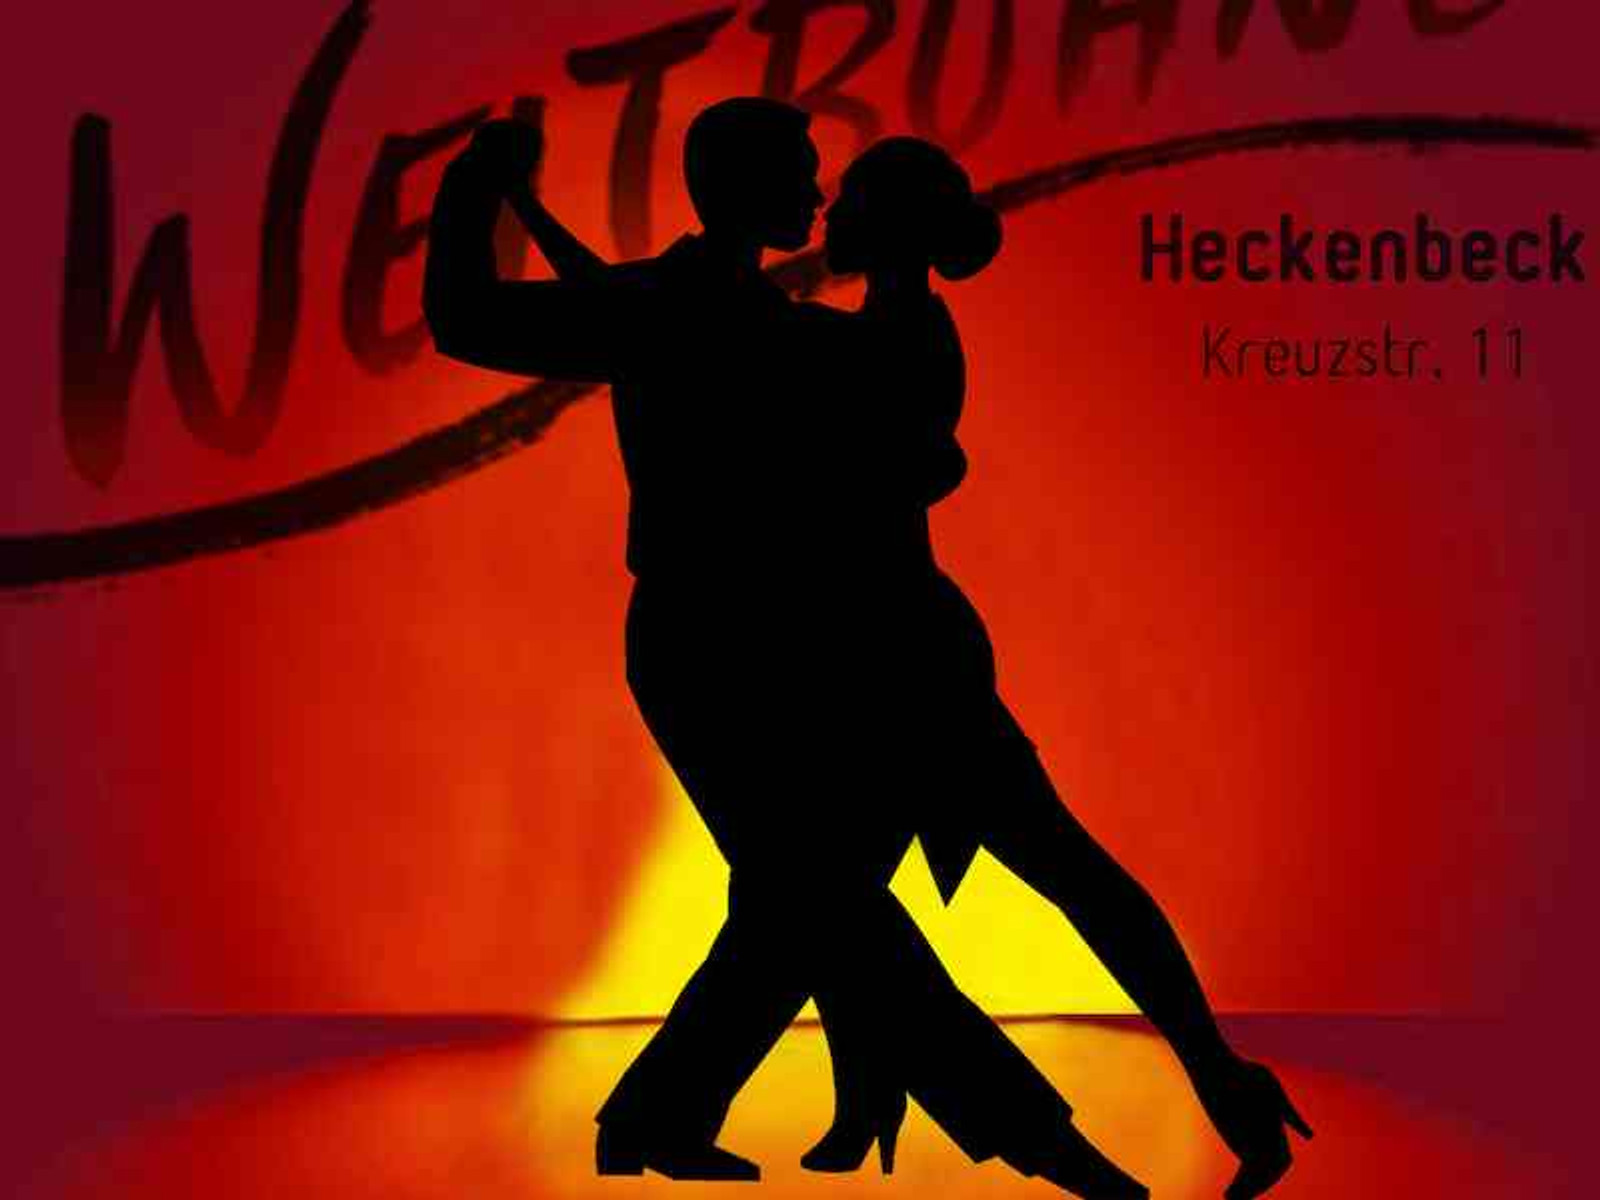 Tango - Weltbühne Heckenbeck